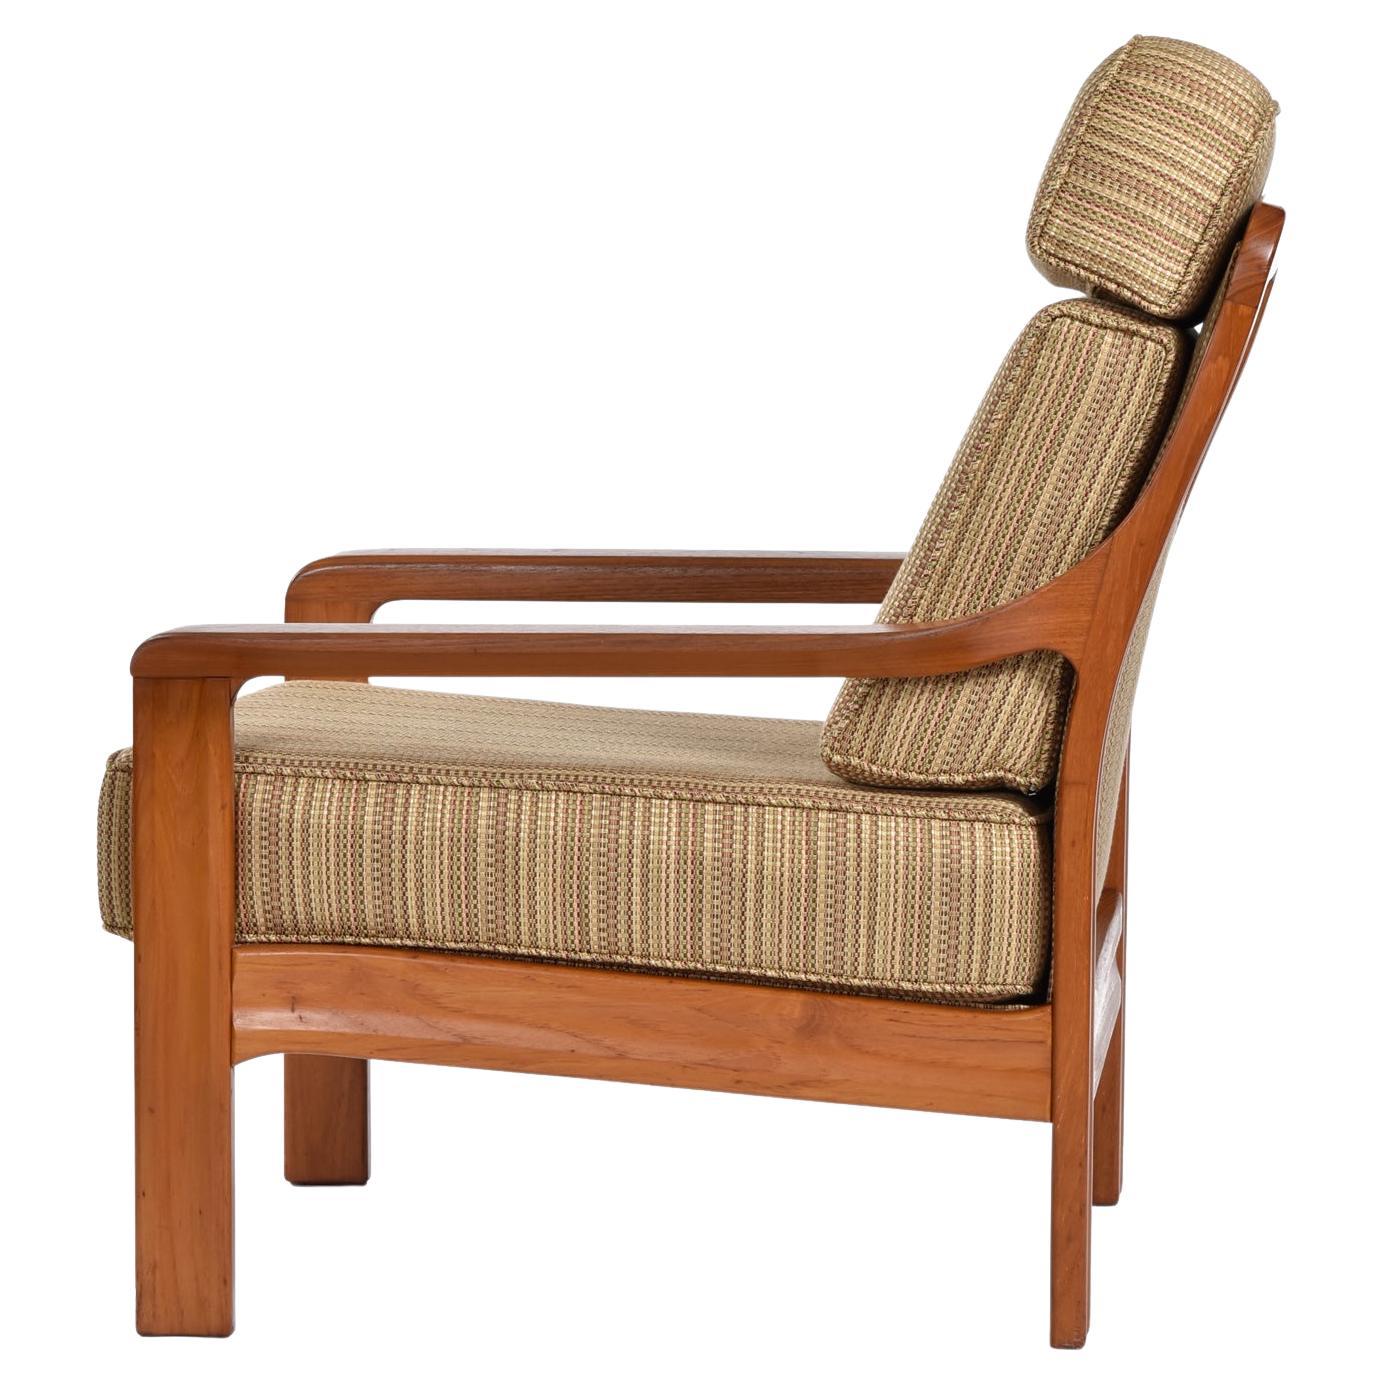 Dieser außergewöhnliche Vintage-Sessel aus massivem Teakholz hat ein typisch dänisch-modernes Design, könnte aber auch aus Kanada stammen, obwohl der Hersteller nicht angegeben ist.  Der Stuhl hat eine gepolsterte Rückenlehne, die von geschnitztem